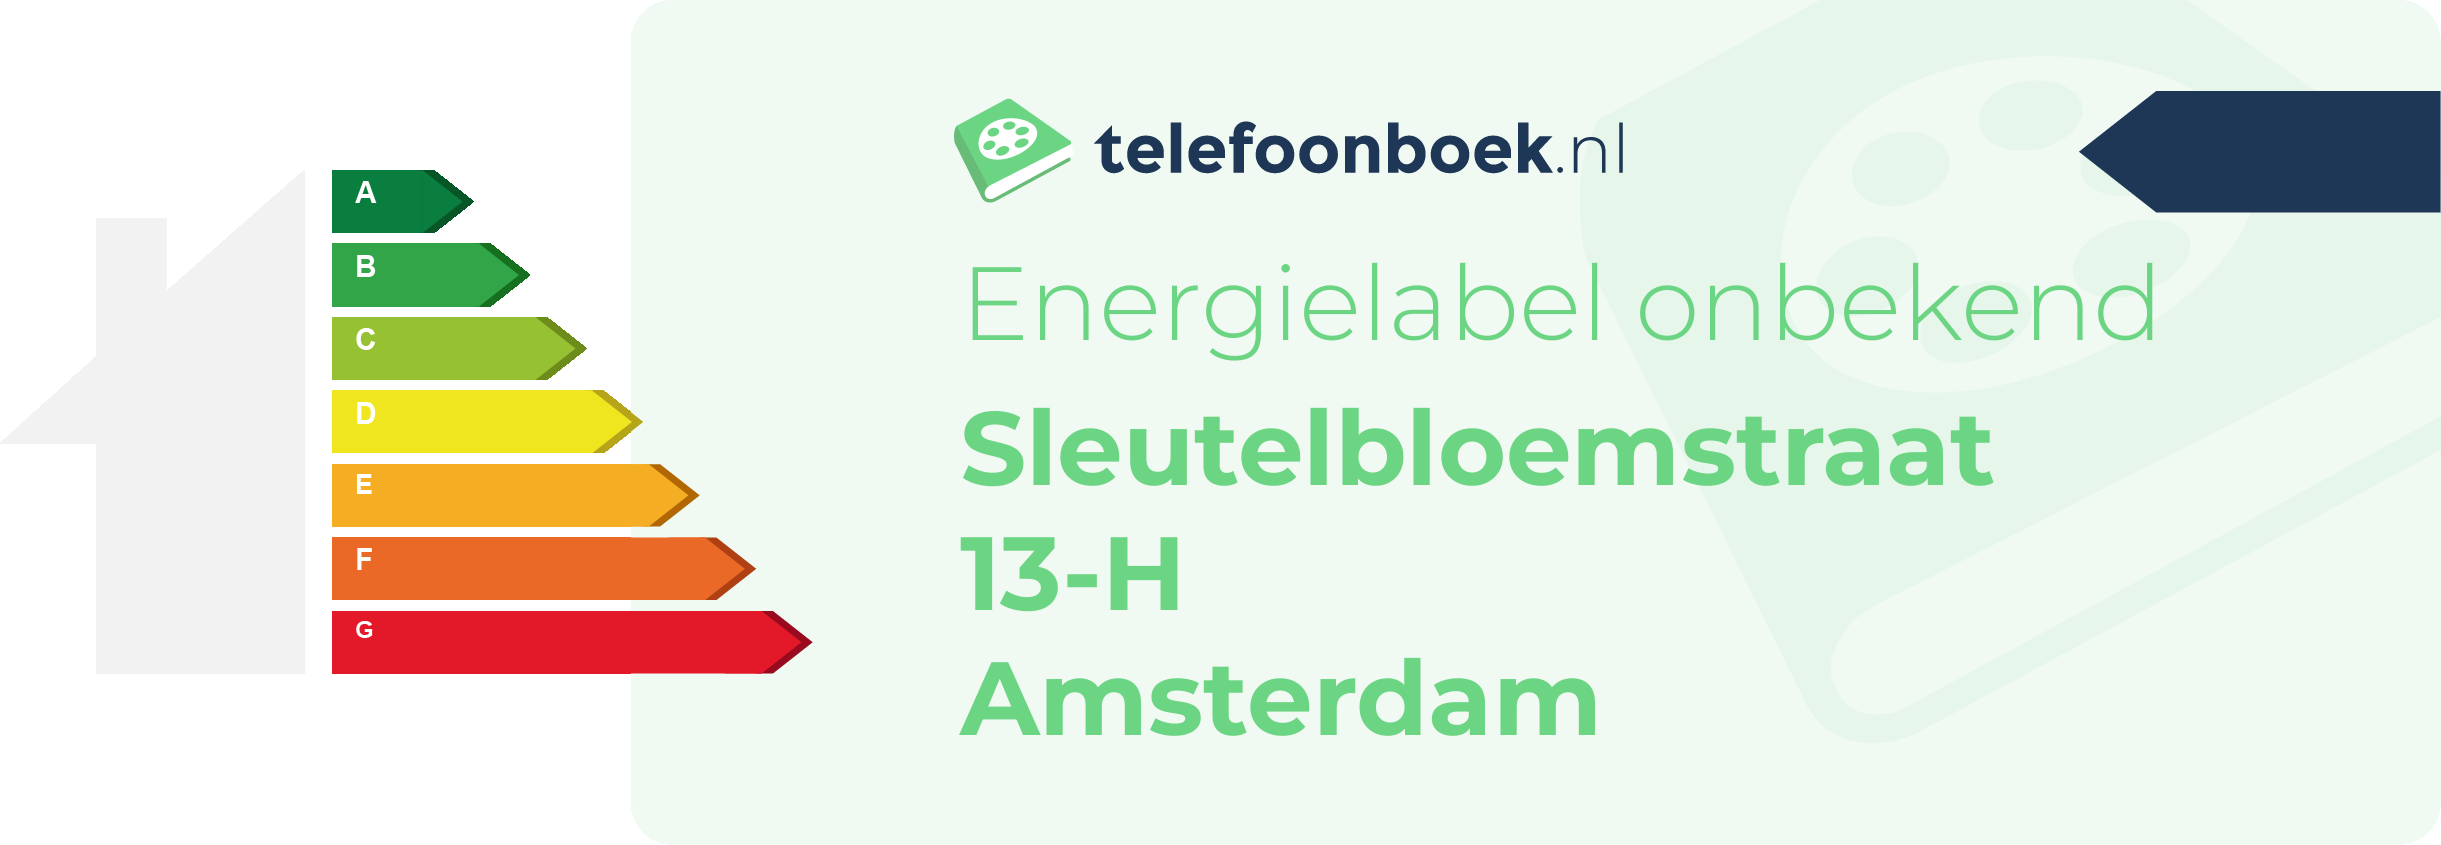 Energielabel Sleutelbloemstraat 13-H Amsterdam